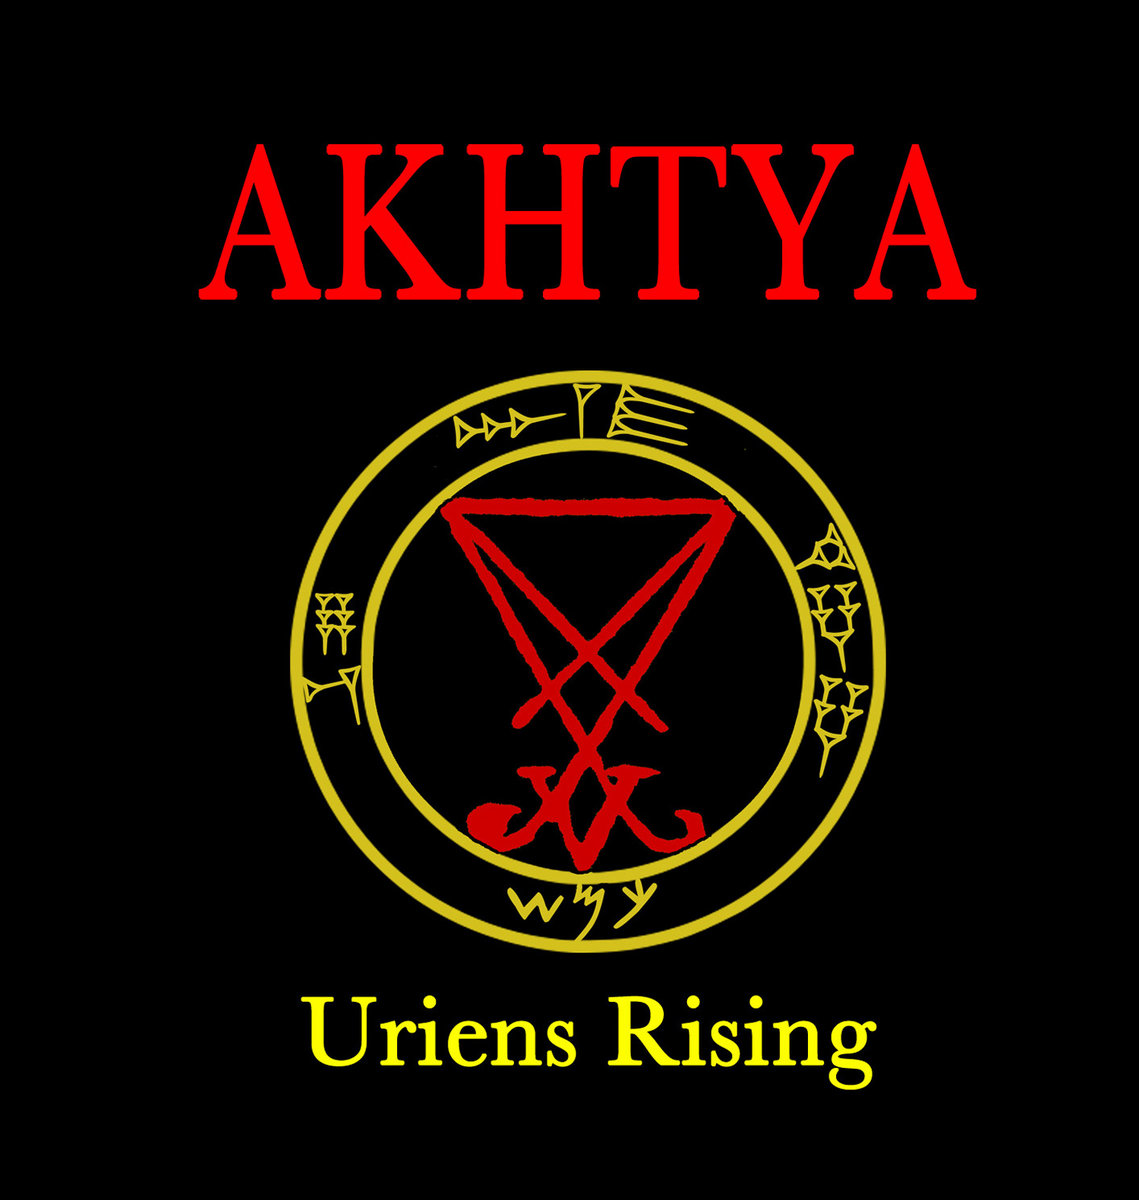 Akhtya - Uriens Rising (2013) FLAC Download